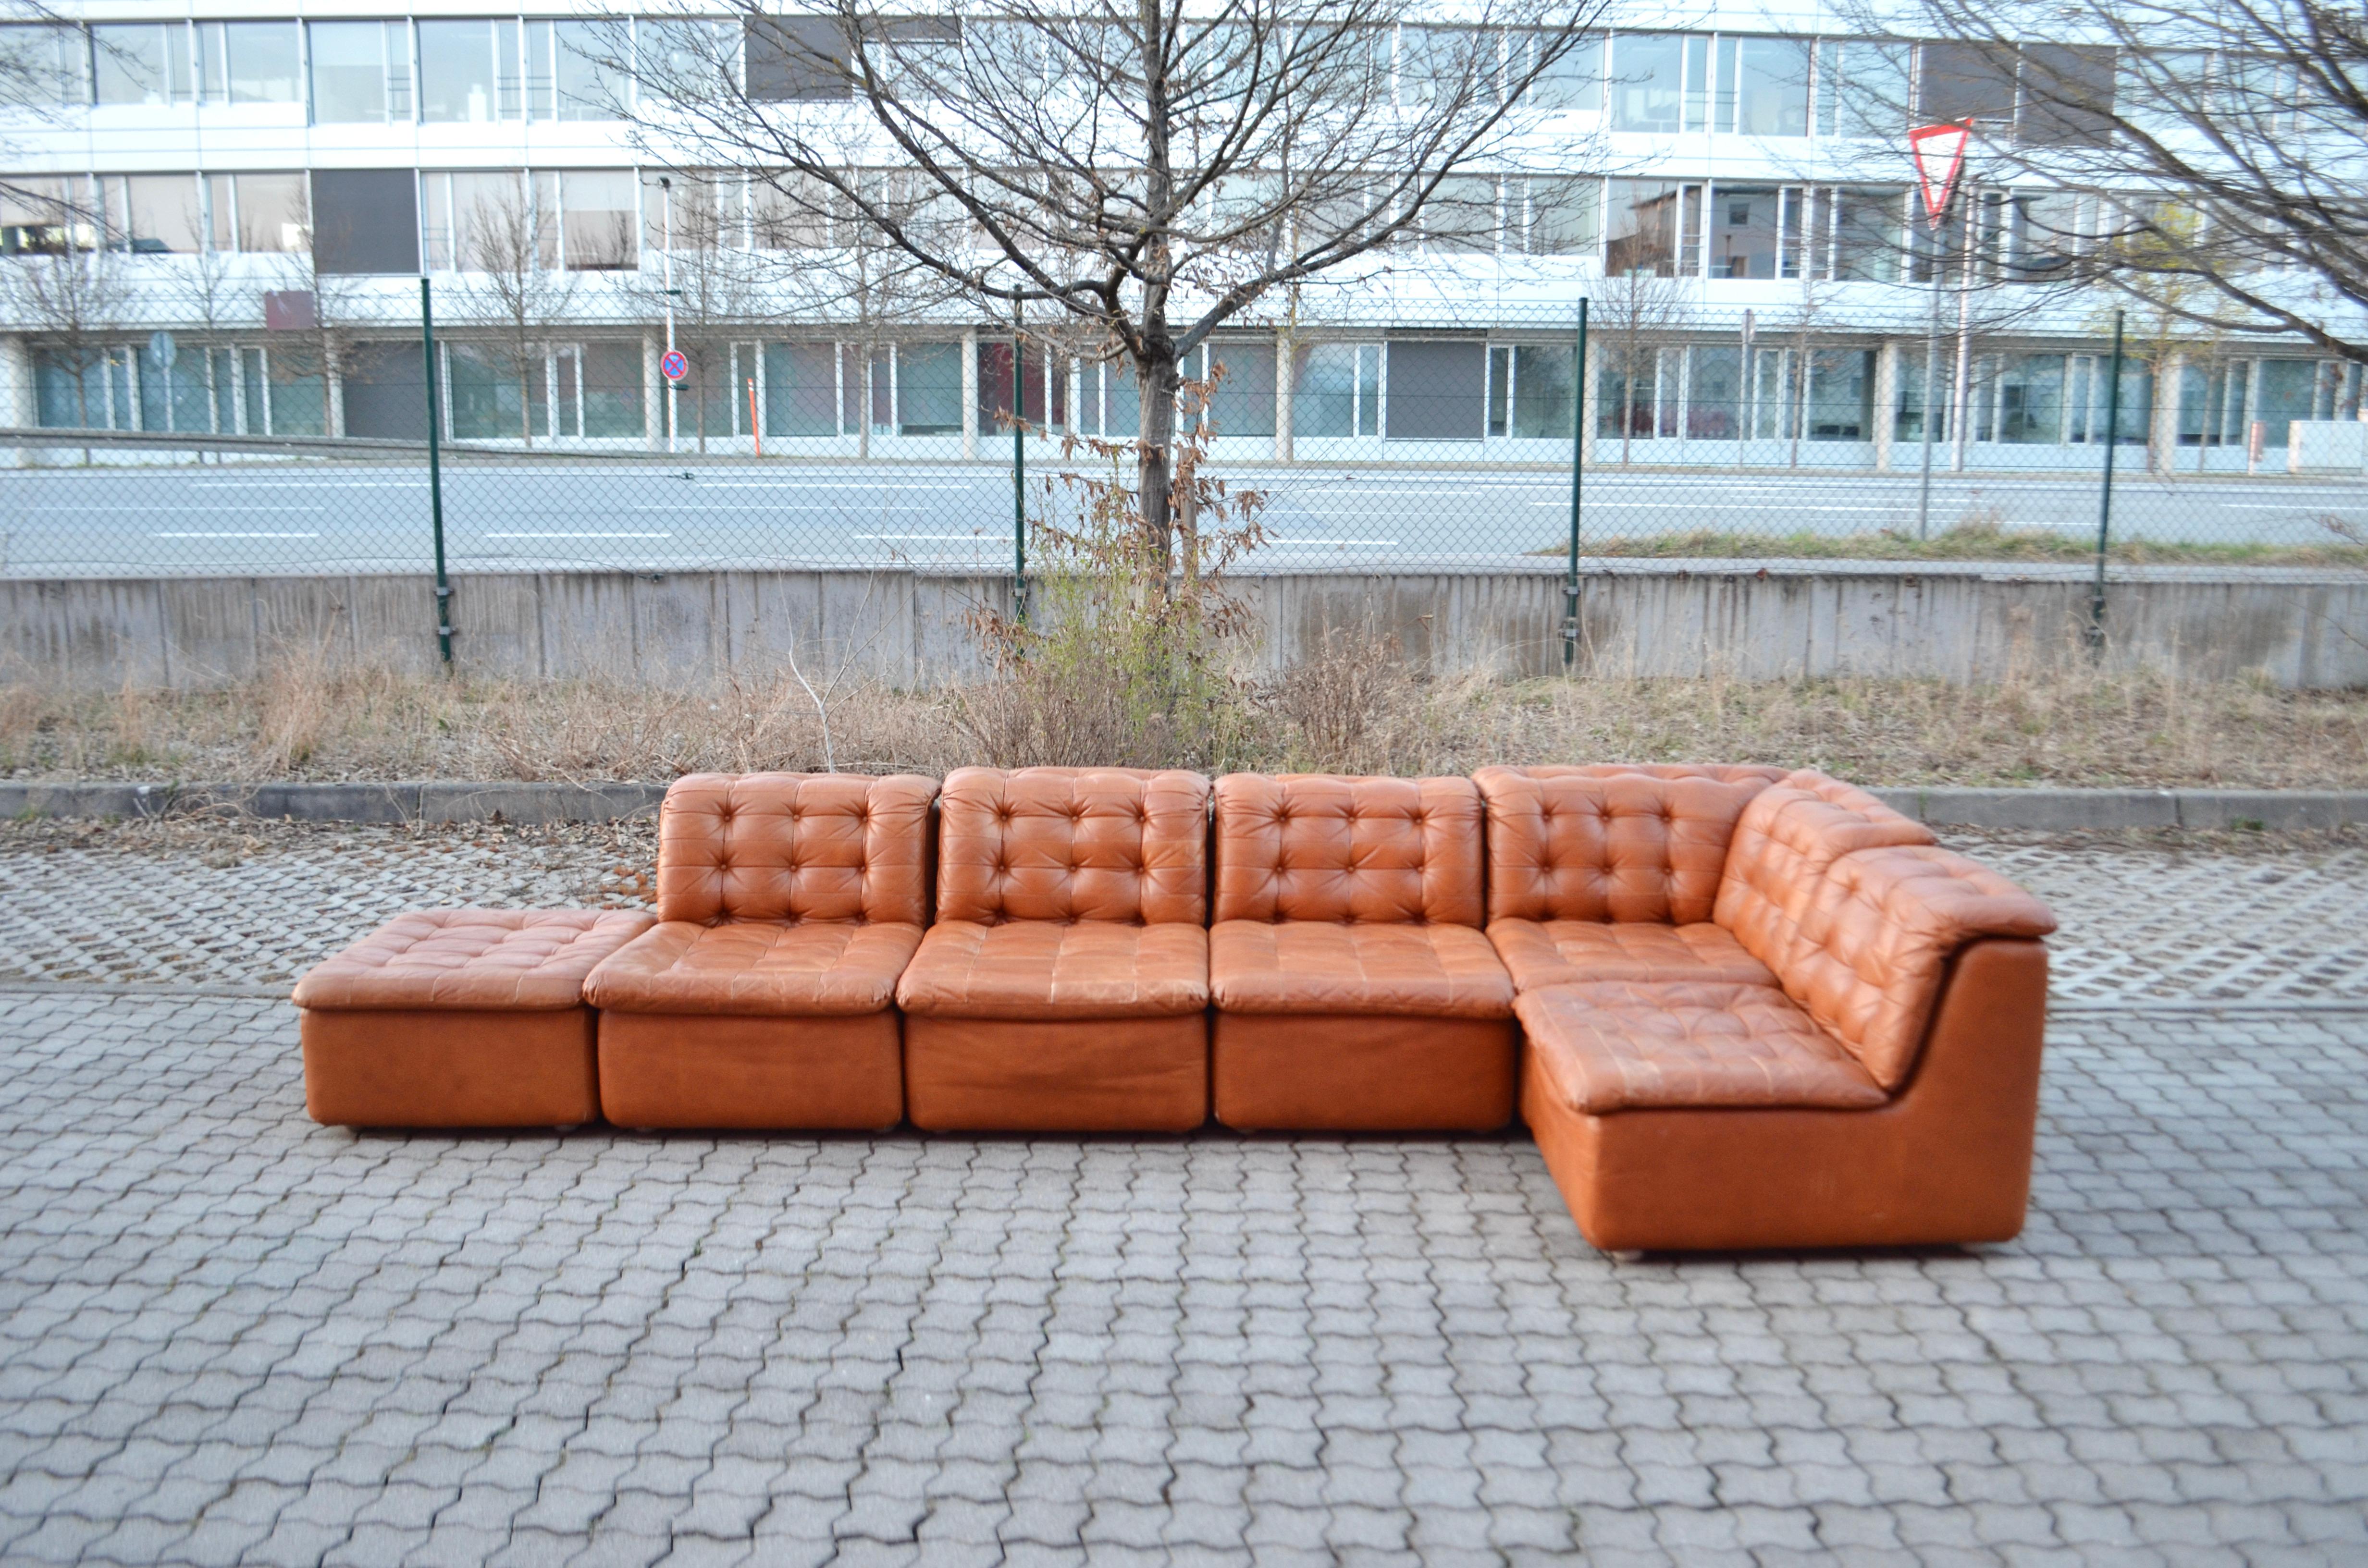 Dieses atemberaubende Modular-Sectional-Ledersofa wird in Deutschland hergestellt.
Es handelt sich um eine hochwertig gefertigte Sitzgruppe.
Der Produzent ist noch unbekannt.
Es ist ein reines 70er-Jahre-Design mit zeitlos moderner Form.
Das